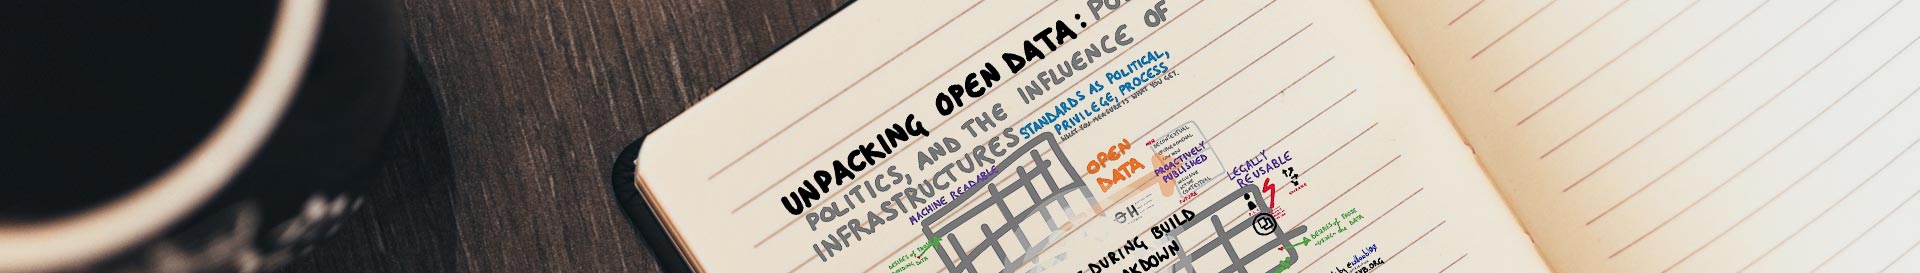 Lees meer over Open Data